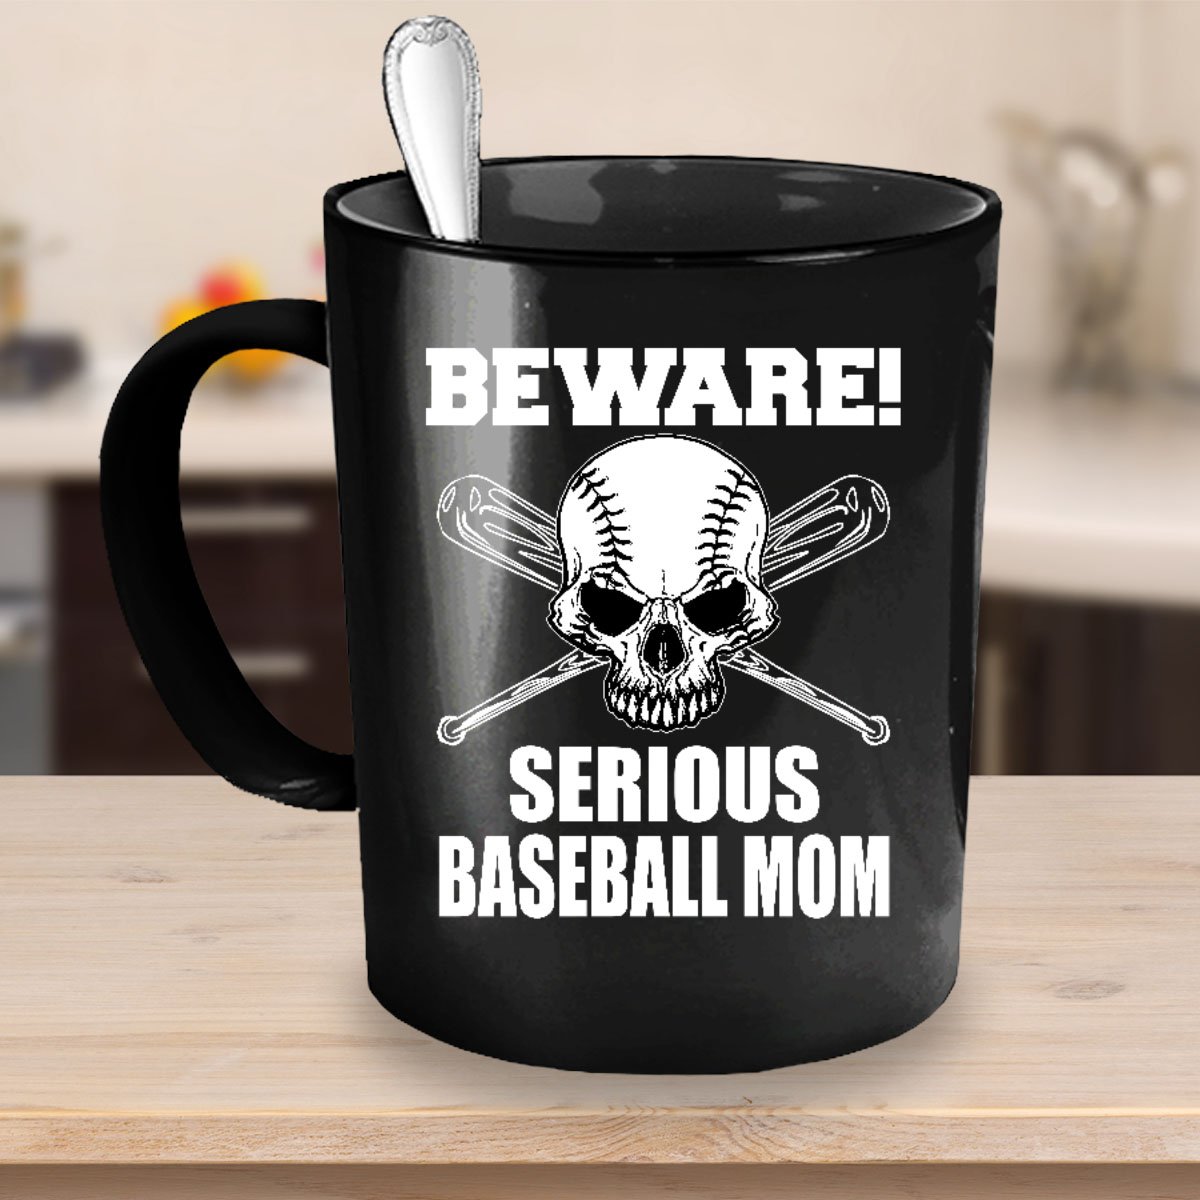 Beware! Serious #Baseball #Mom. the-vip-emporium.com/collections/sp…